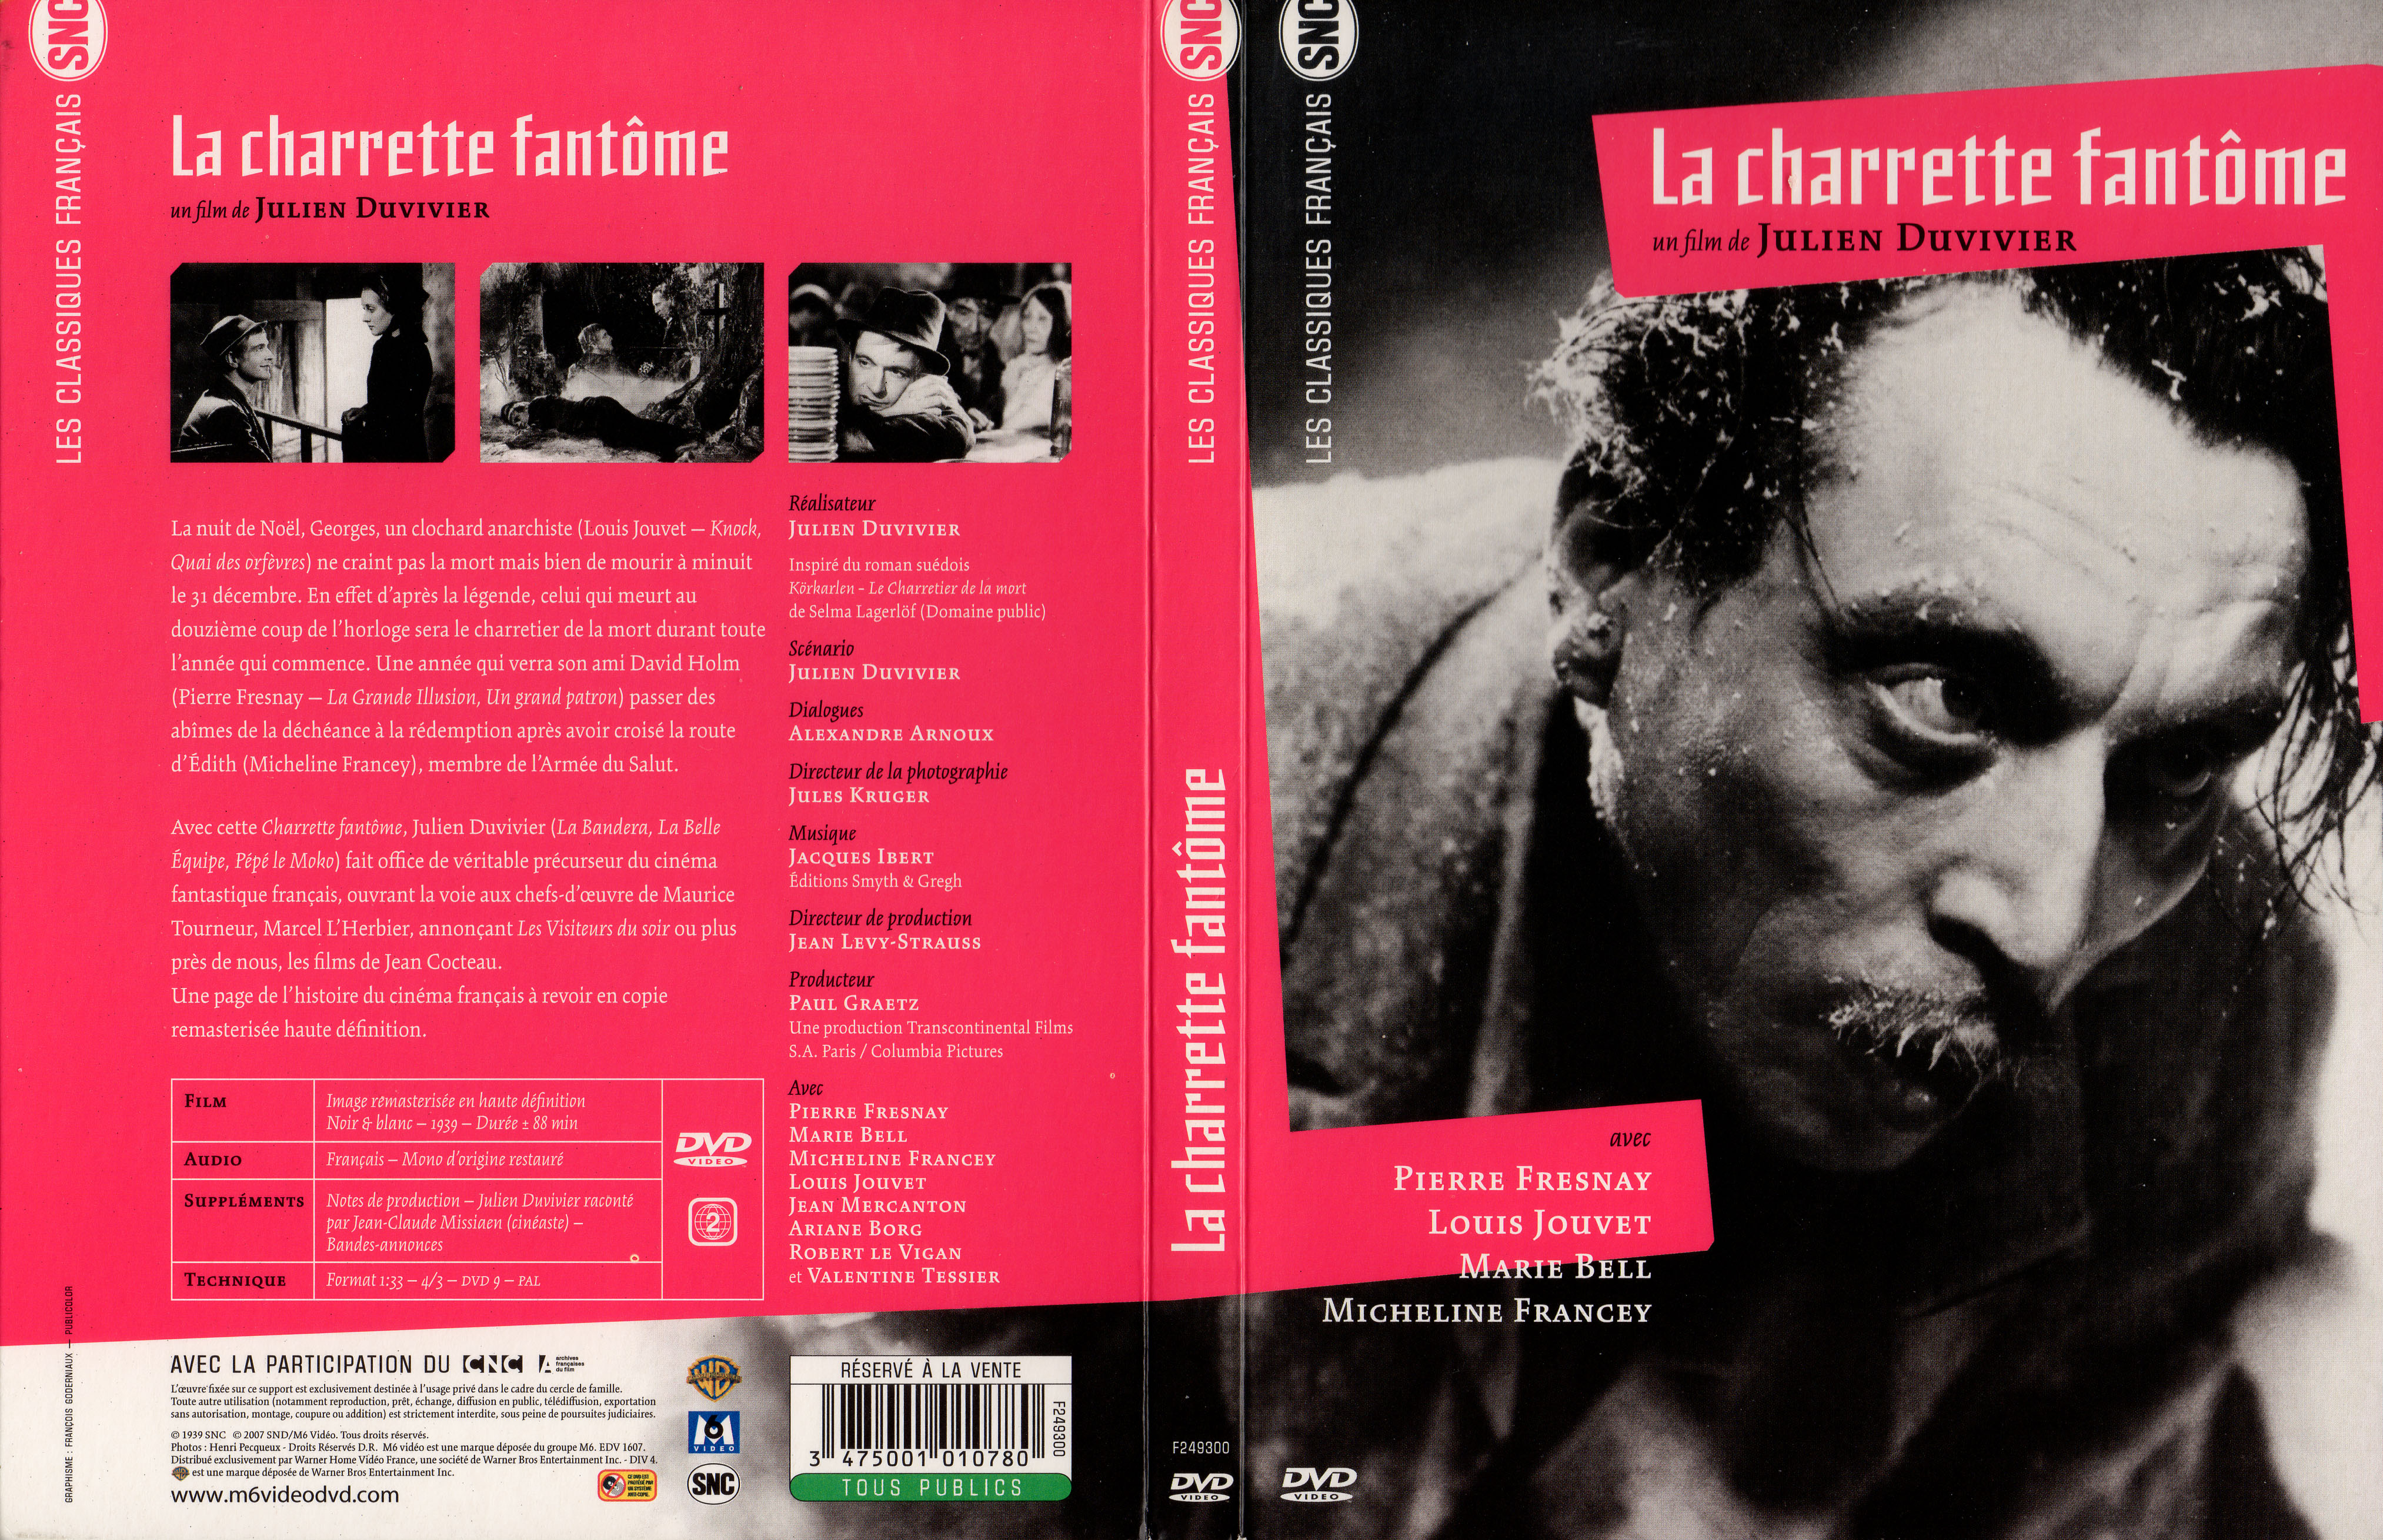 Jaquette DVD La charrette fantome